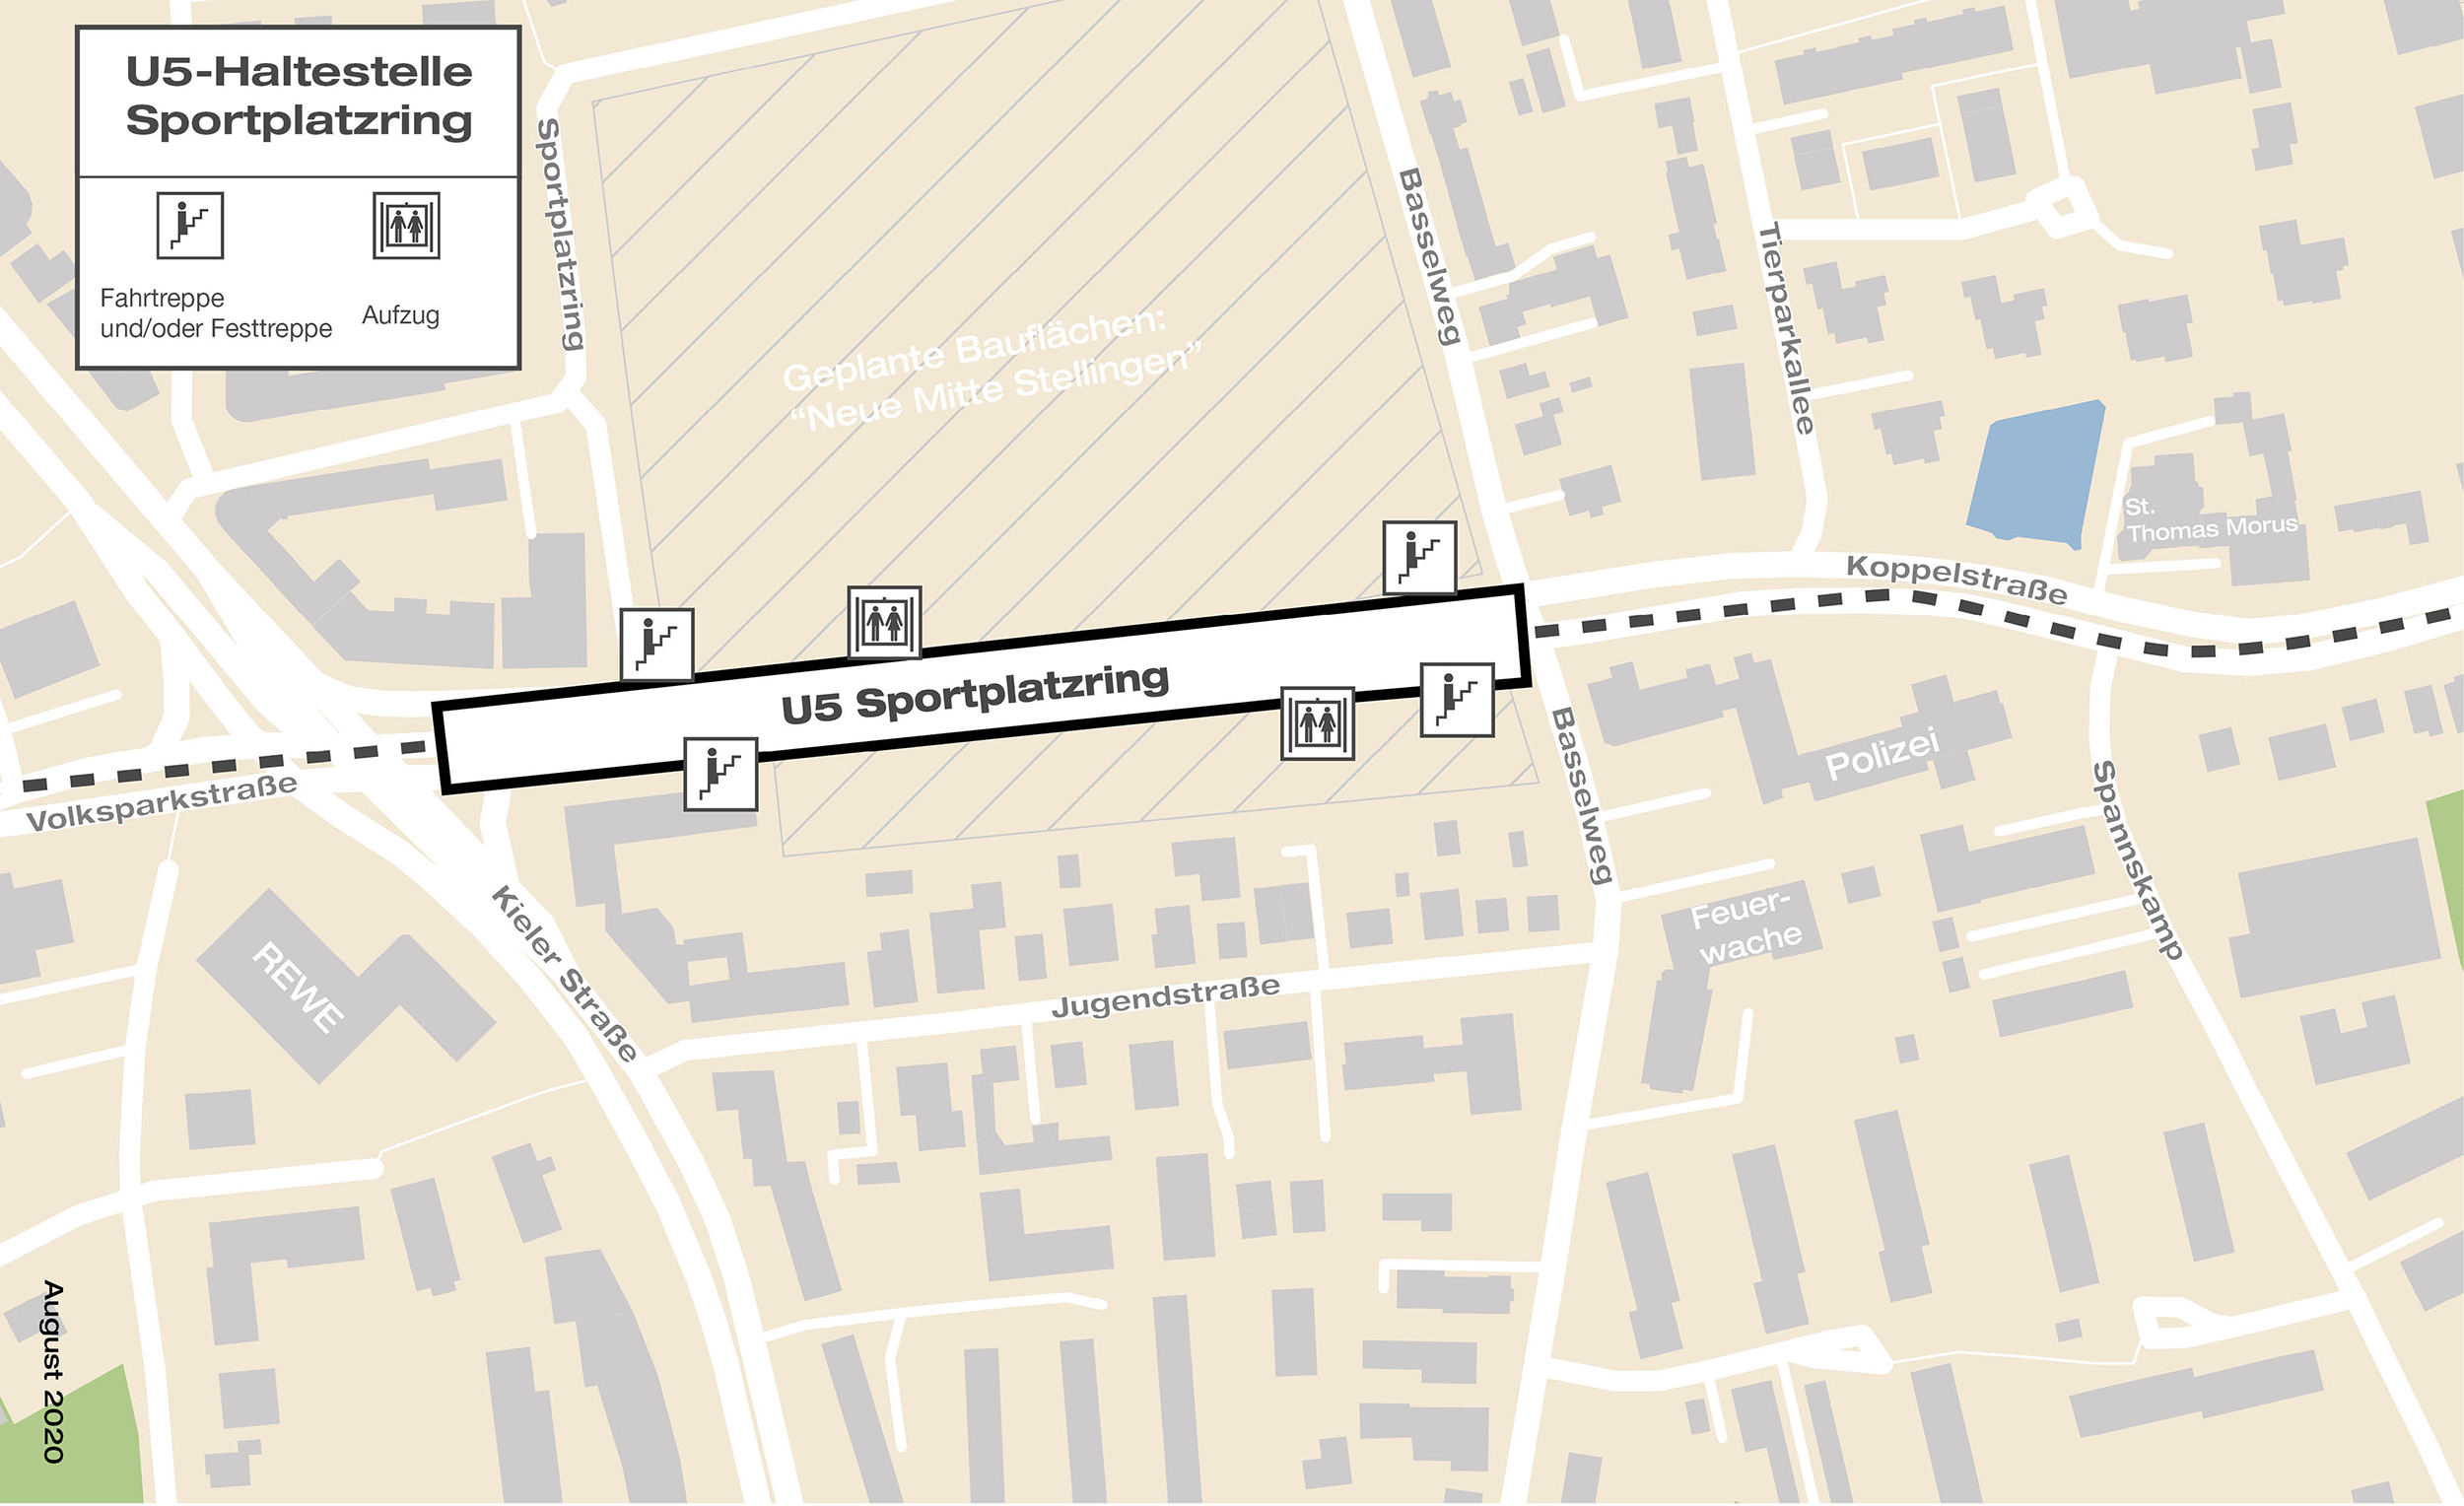 Voraussichtliche Lage des Haltestellenkörpers der geplanten U5-Haltestelle Sportplatzring, zwischen Kieler Straße und Koppelstraße.